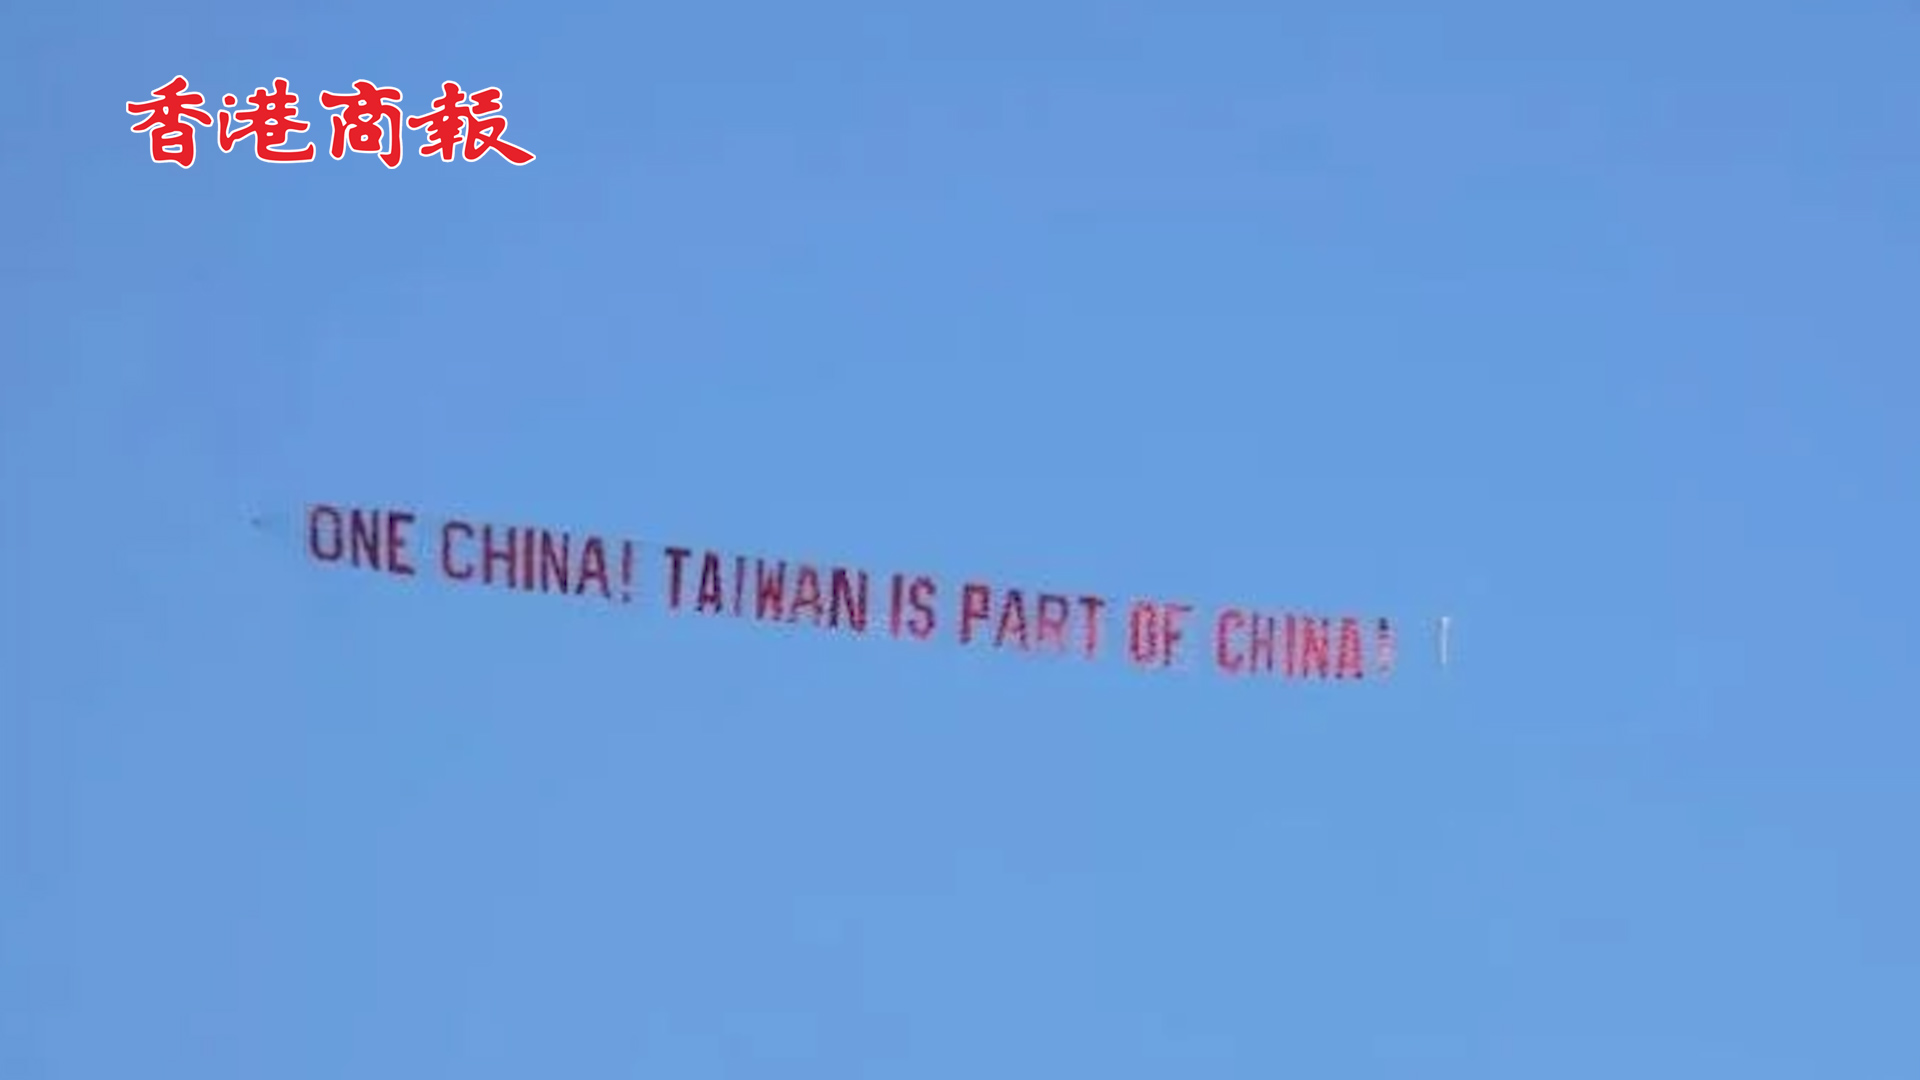 有片丨麥卡錫會見竄美的蔡英文時 天空中飛過「一個中國」英文橫幅